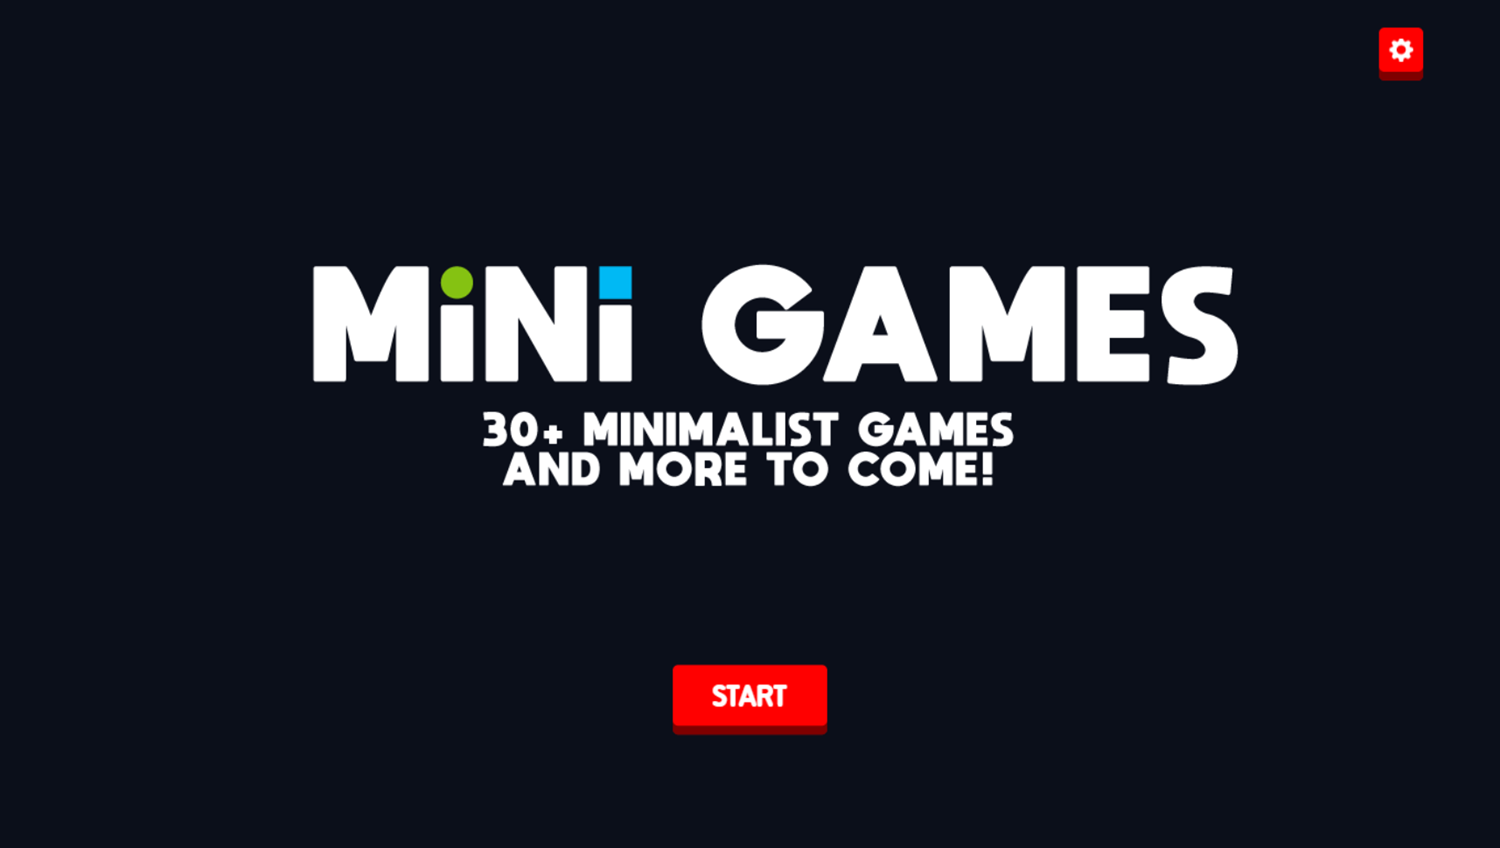 Mini Games Game Welcome Screen Screenshot.